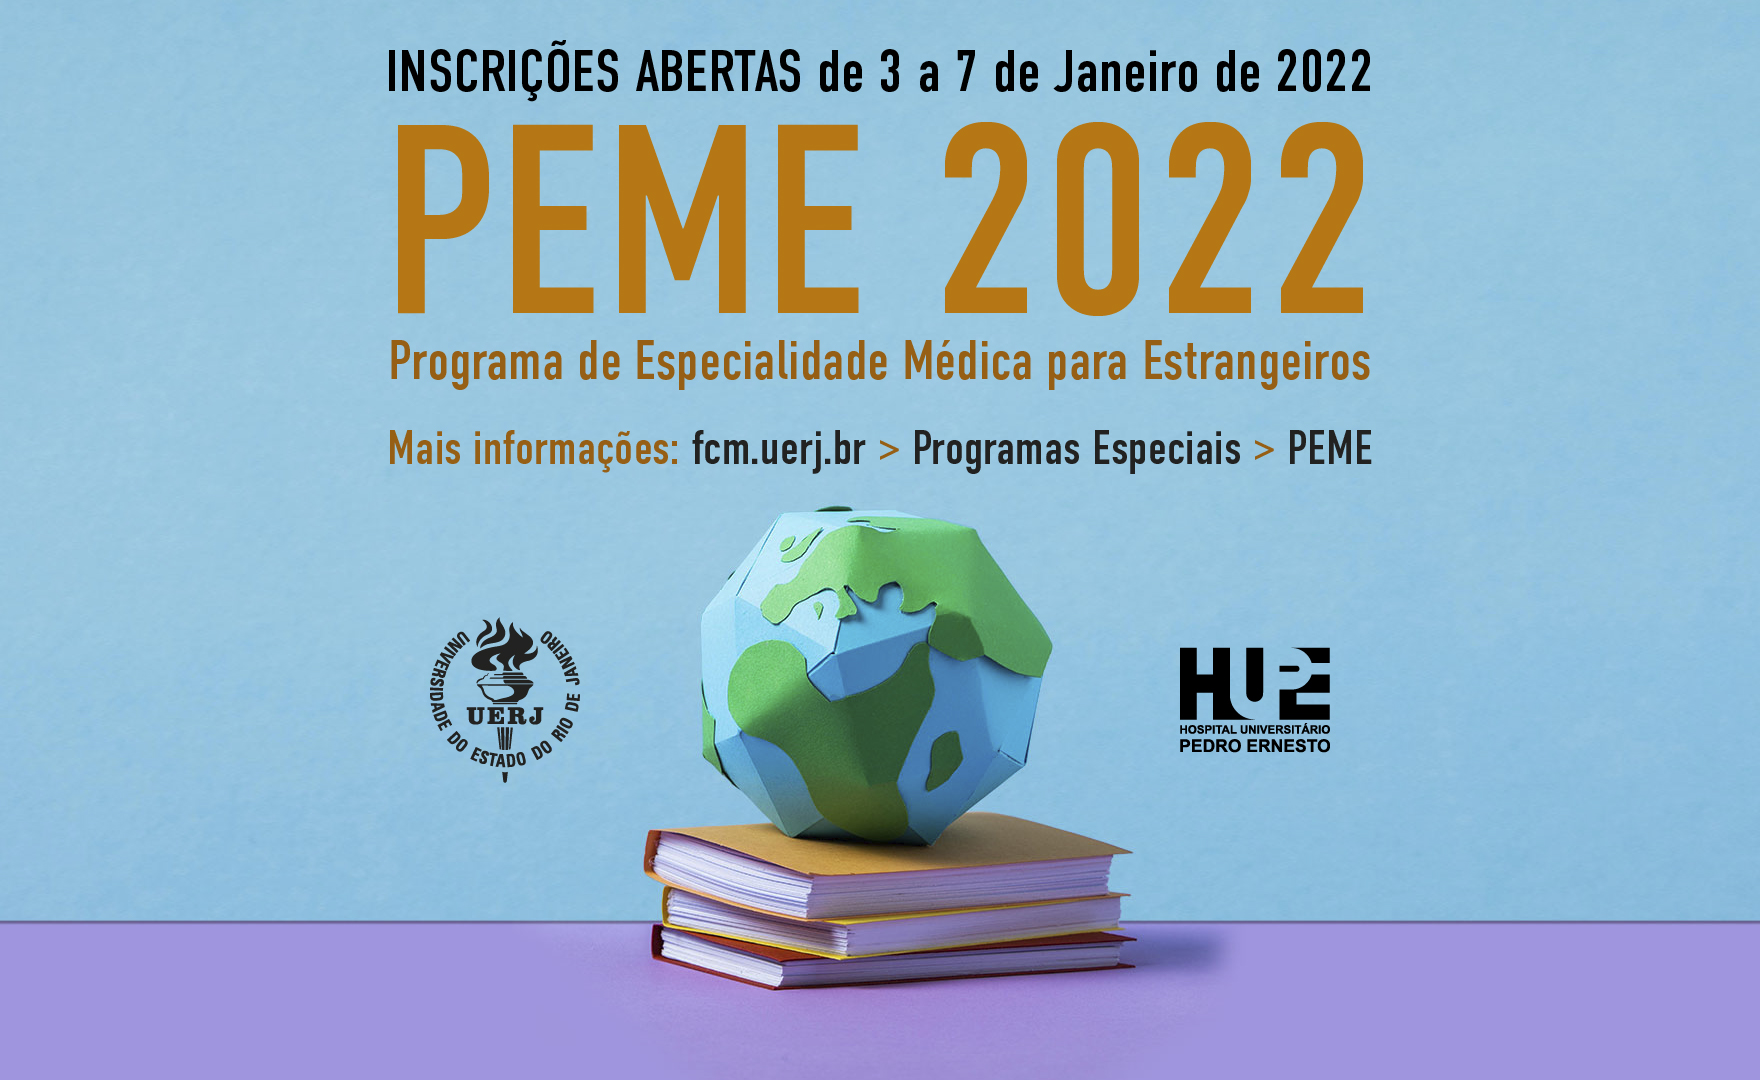 Programa de Especialidade Médica para Estrangeiros (PEME) 2022